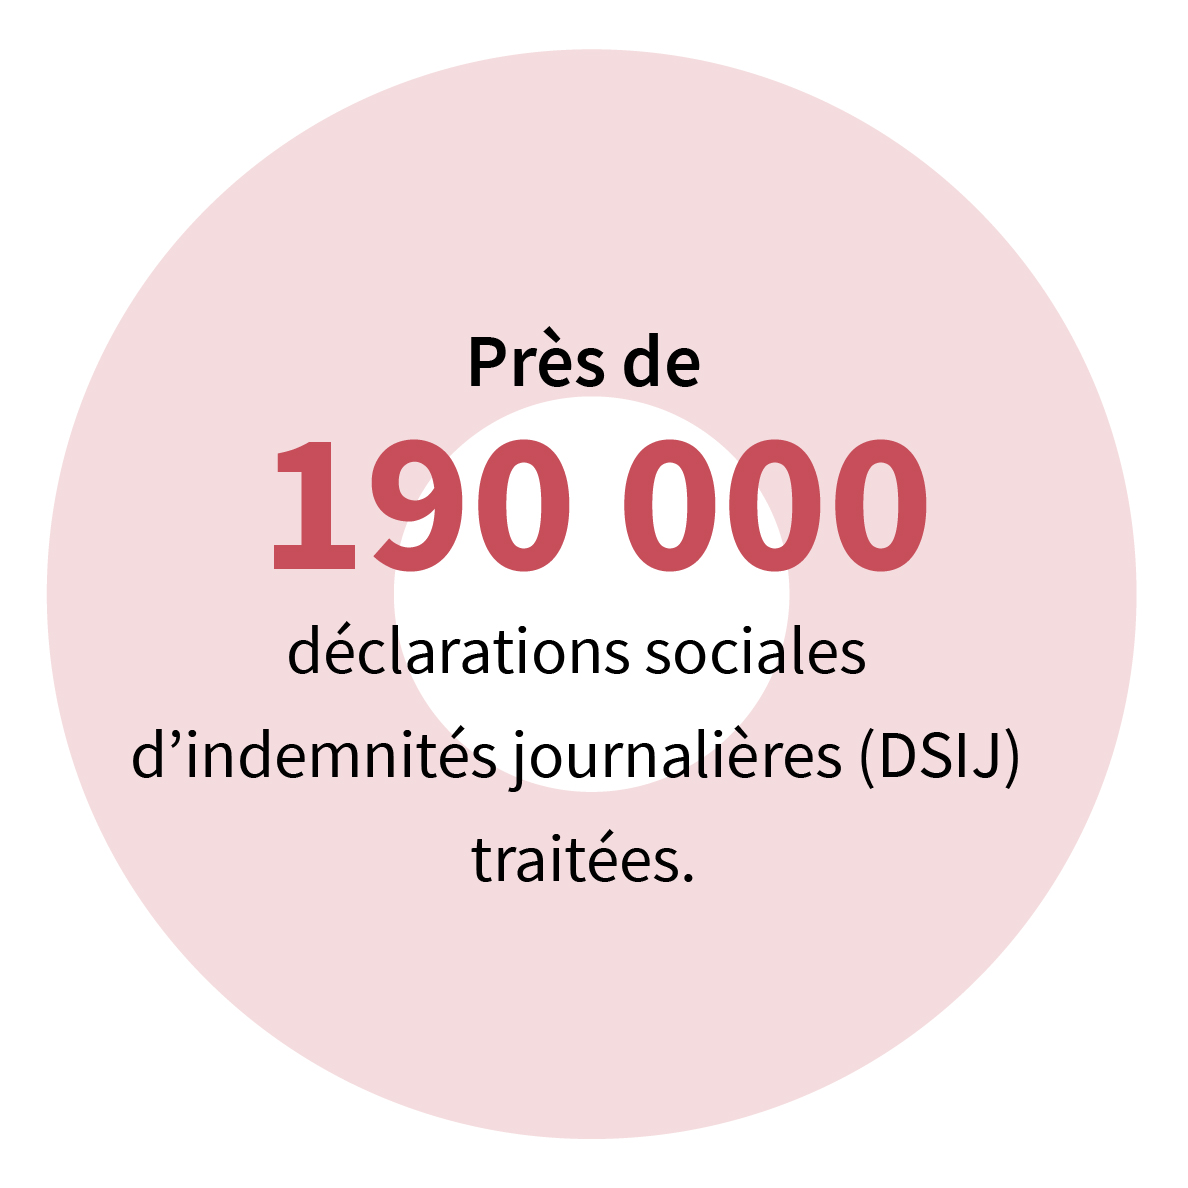 Près de 190 000 déclarations sociales d’indemnités journalières (DSIJ) traitées.